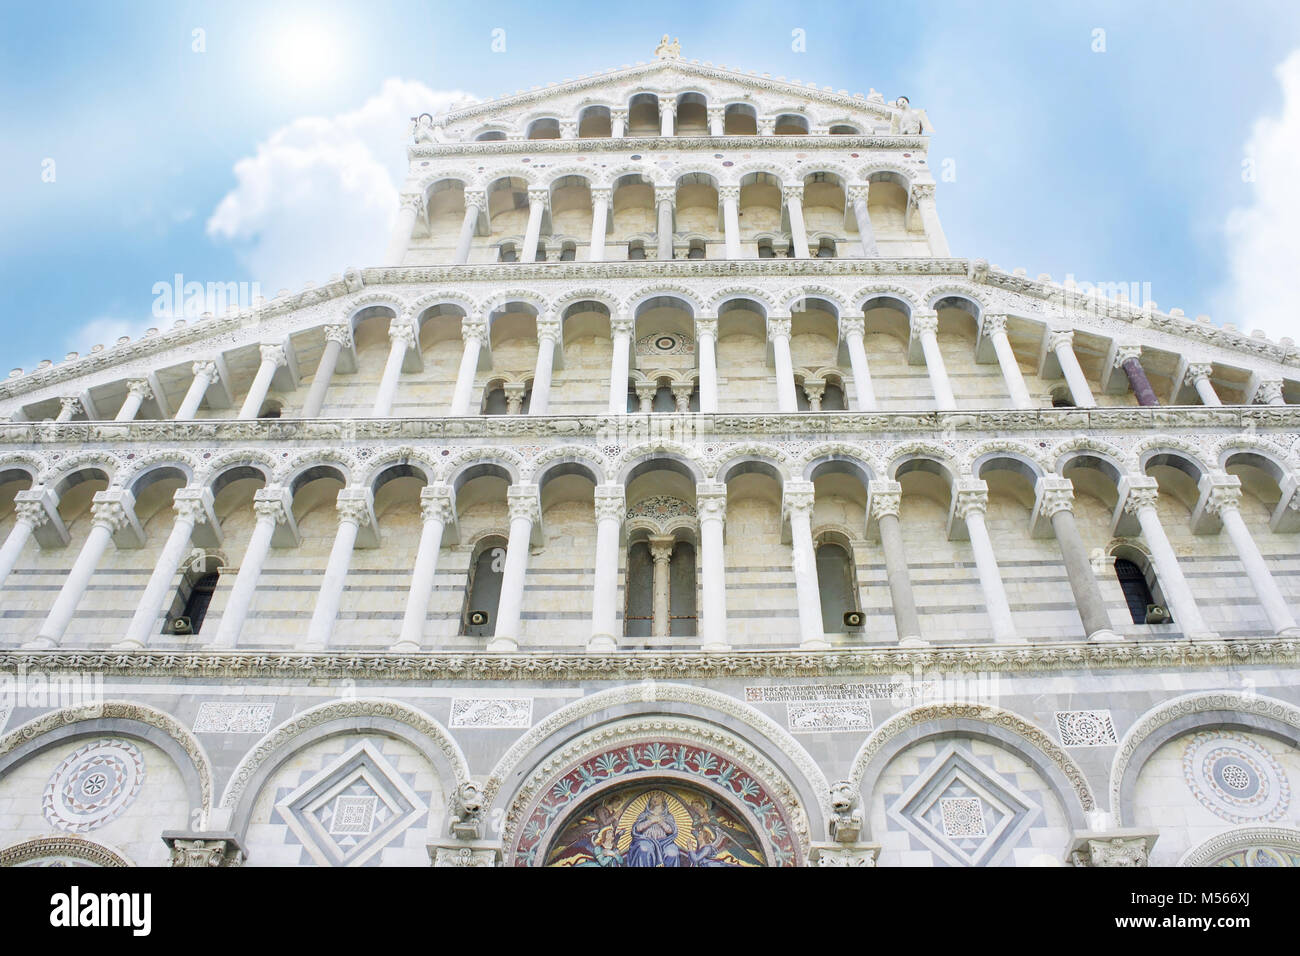 La belle façade de la cathédrale dans le domaine des miracles, Pise, Toscane Banque D'Images